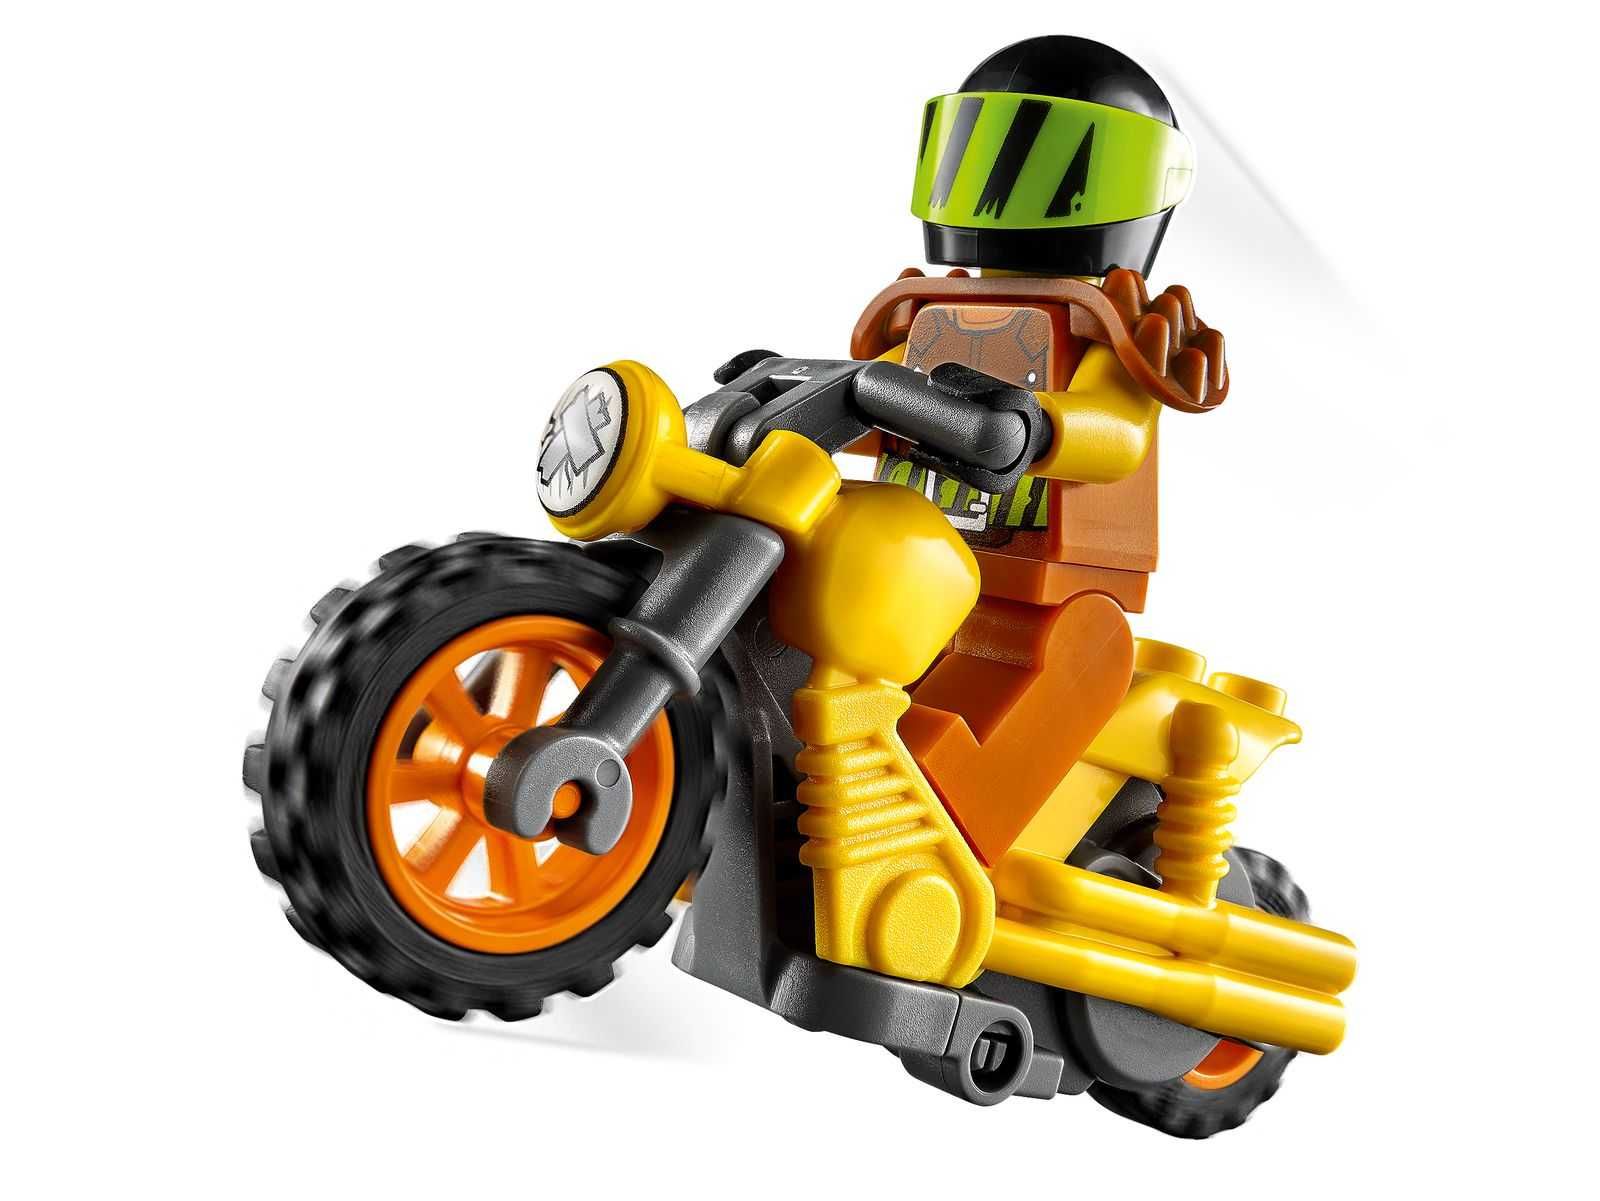 LEGO 60297 City - Demolka na motocyklu kaskaderskim